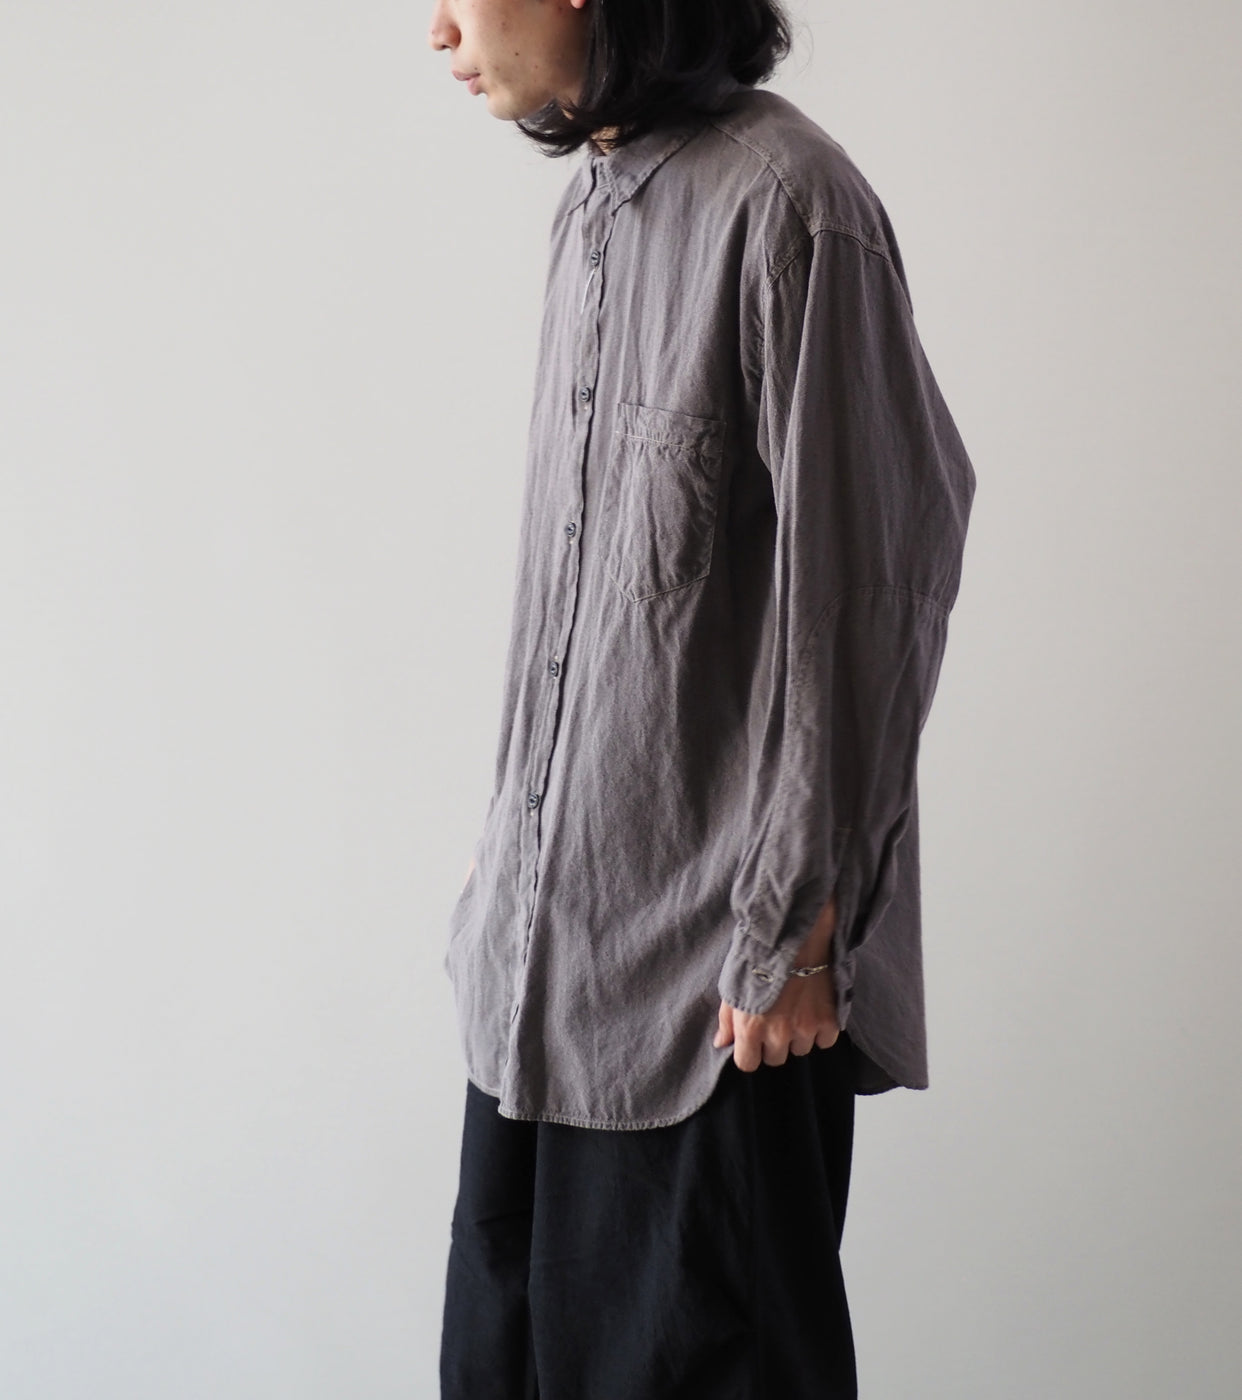 COMOLI ヨリ杢 ワークシャツ, Gray